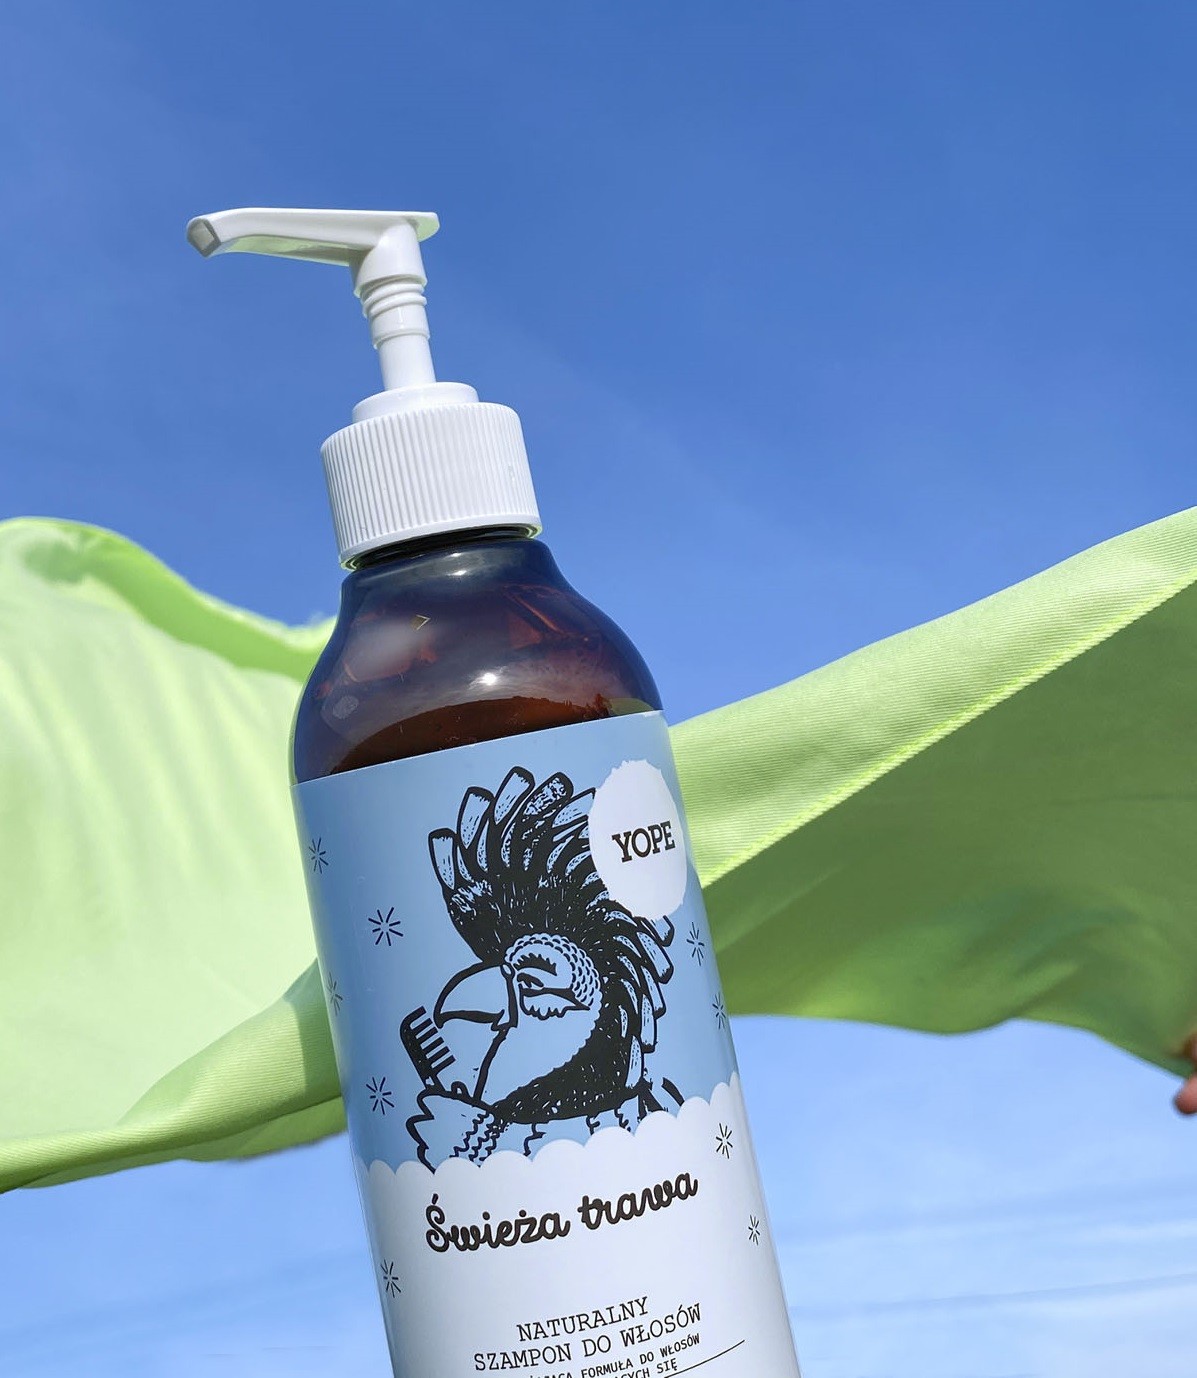 ekologiczny szampon przeciwłupieżowy do włosów przetłuszczających